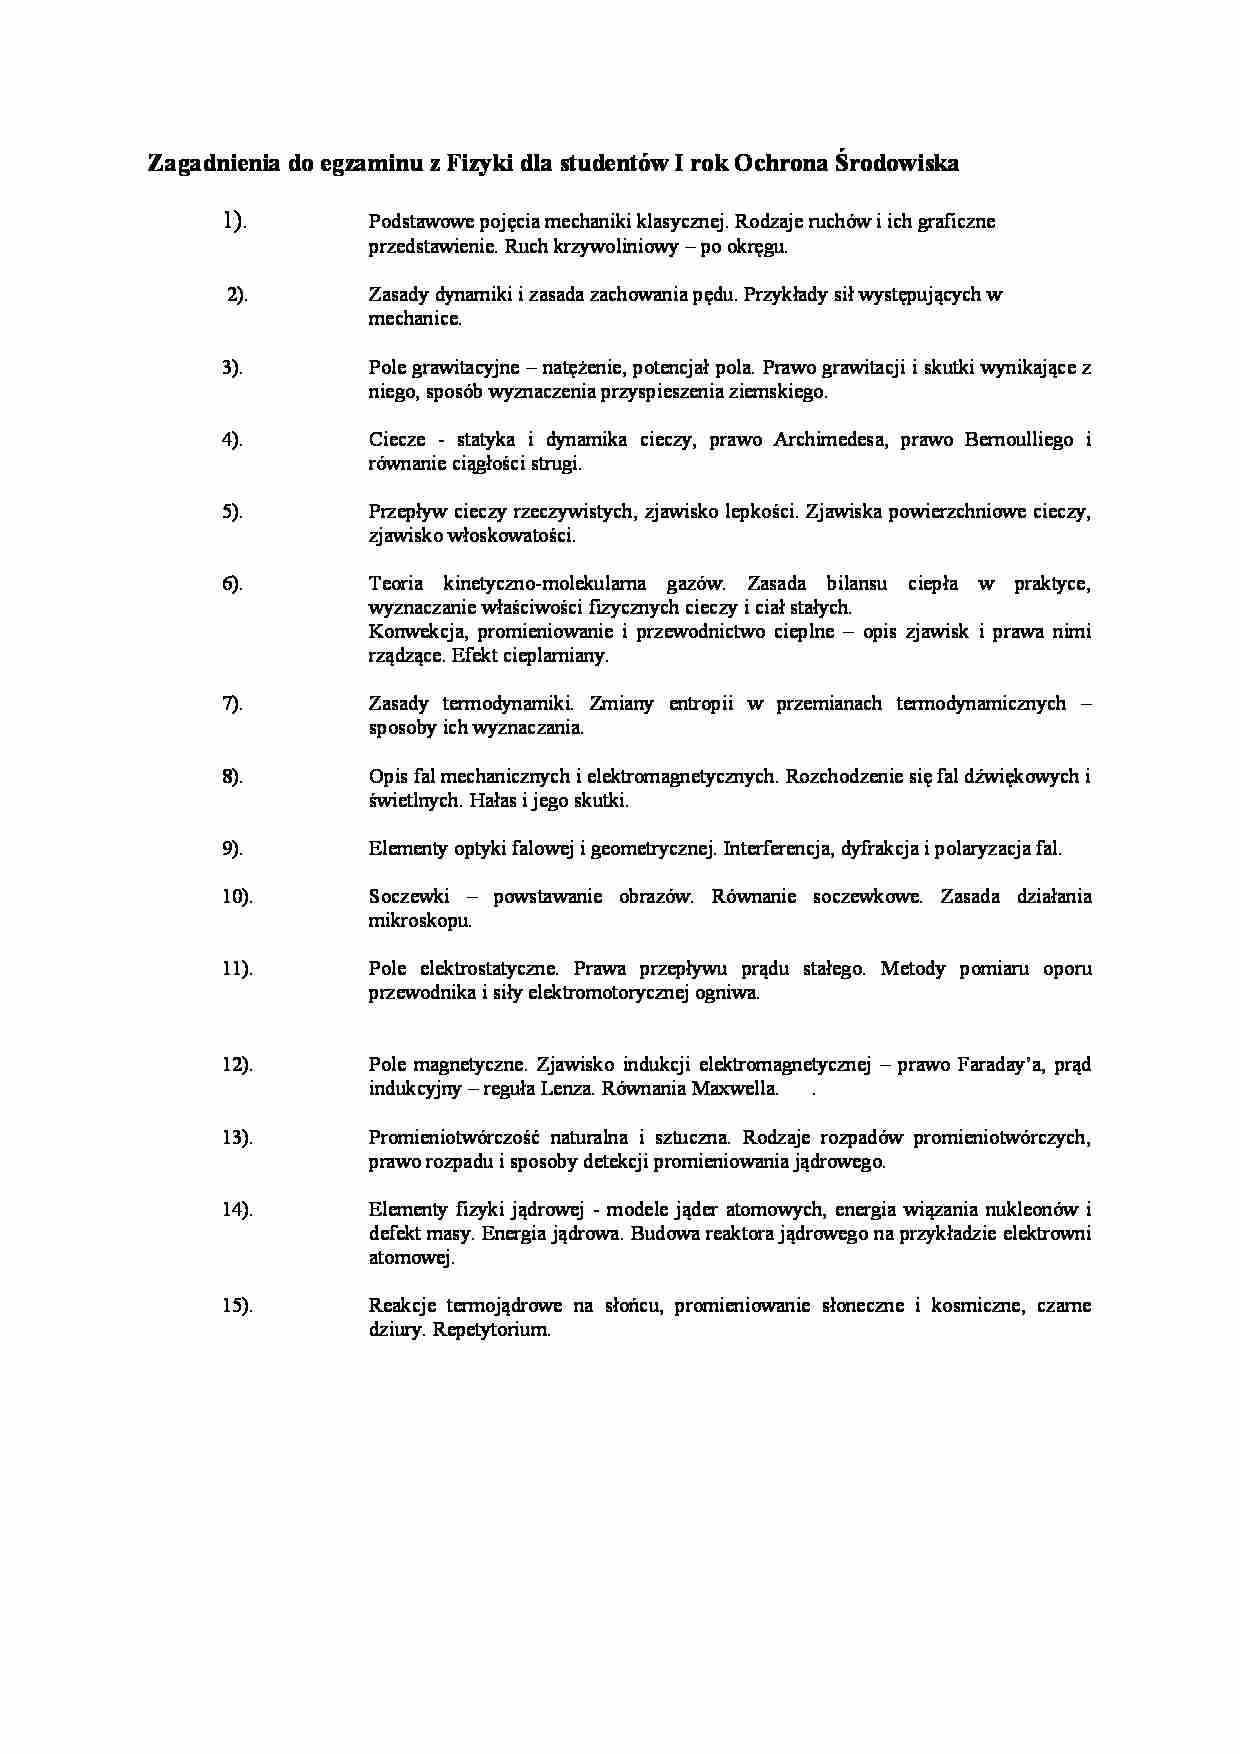 Zagadnienia na egzamin dla ochrony środowiska - strona 1